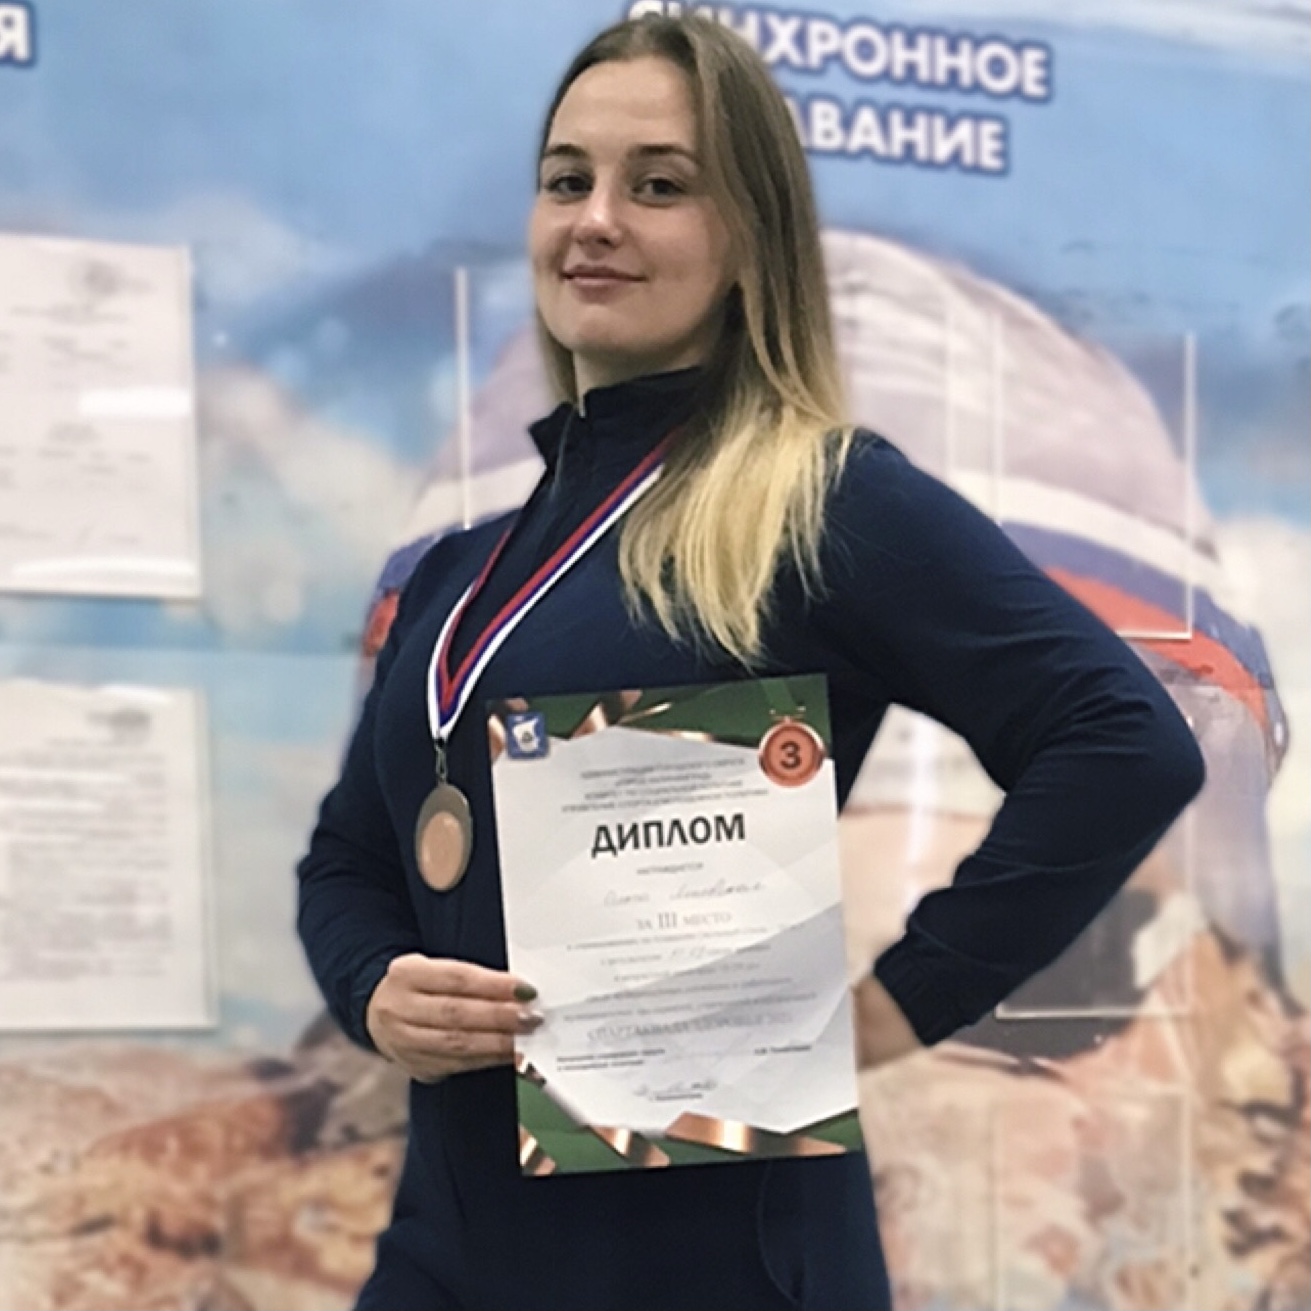 Янчевская Ольга Анатольевна - призёр соревнований по плаванию (вольный стиль - 50 м.) - 3 место.